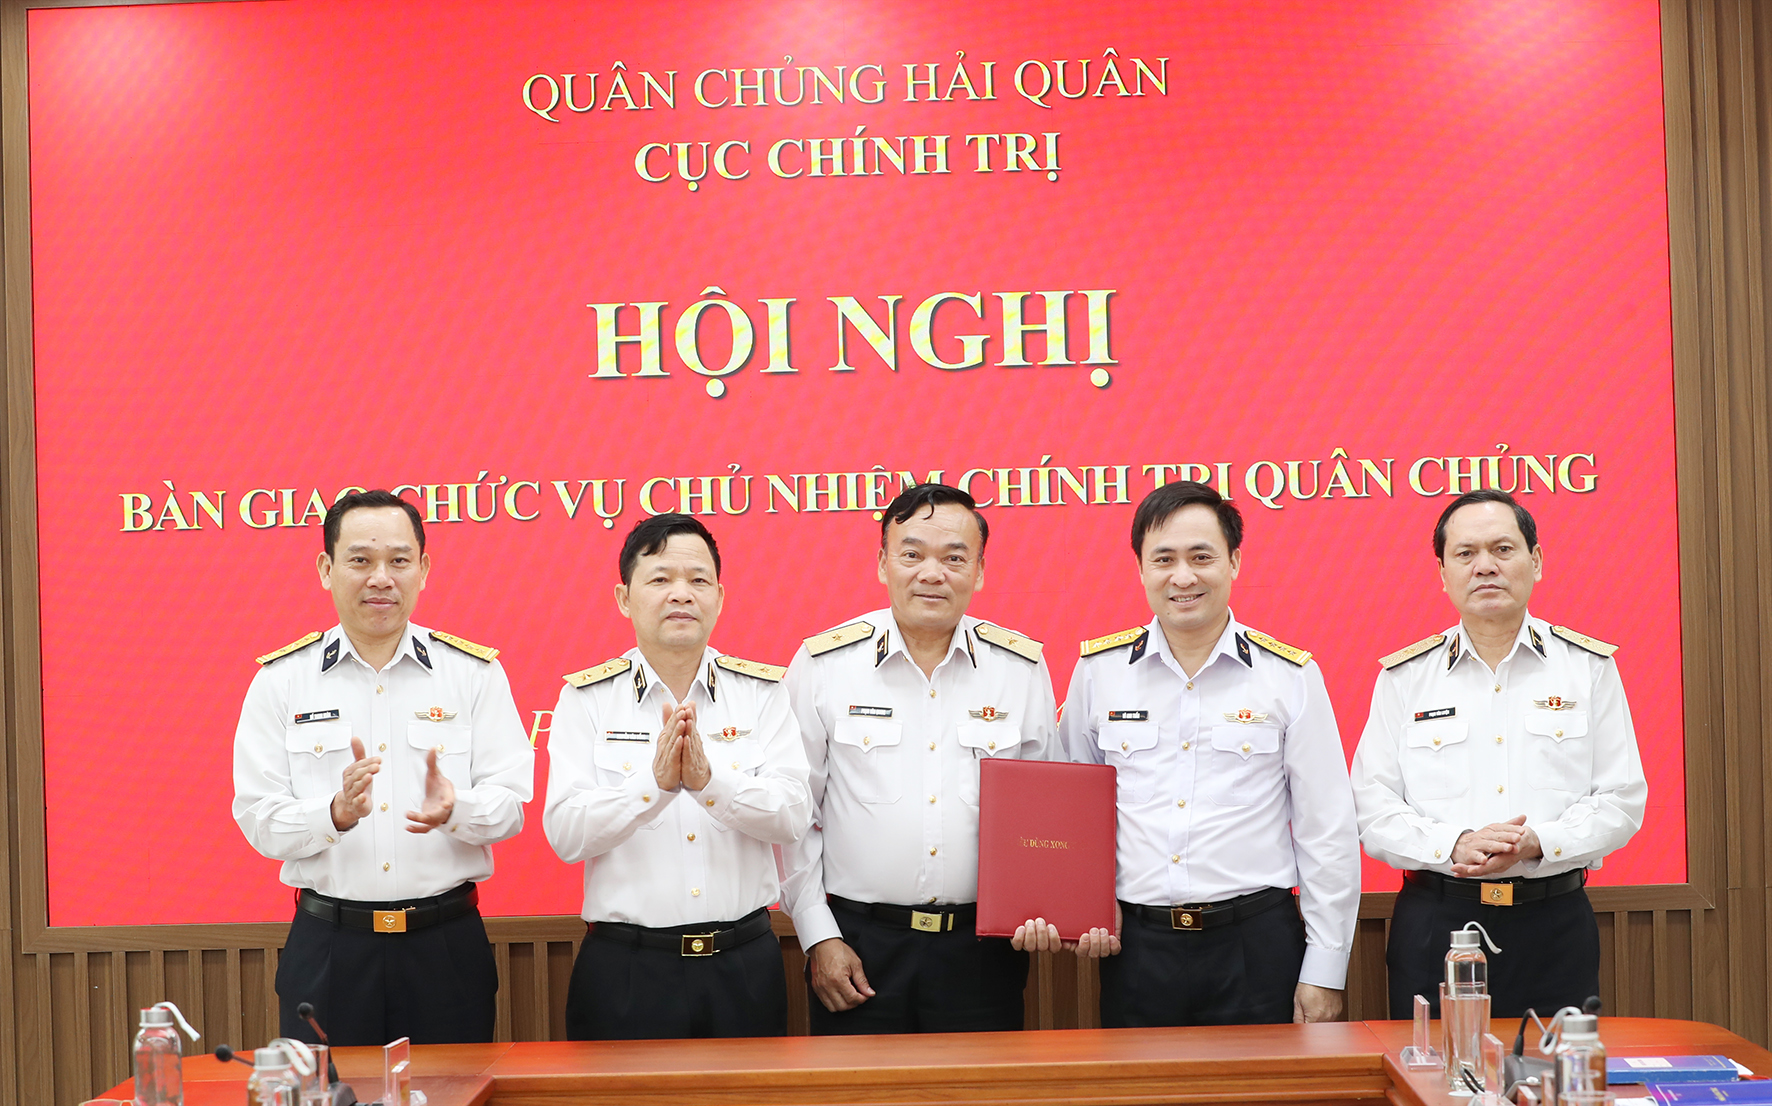 Bổ nhiệm Đại tá, Chính ủy Vùng giữ chức Chủ nhiệm Chính trị Quân chủng- Ảnh 1.